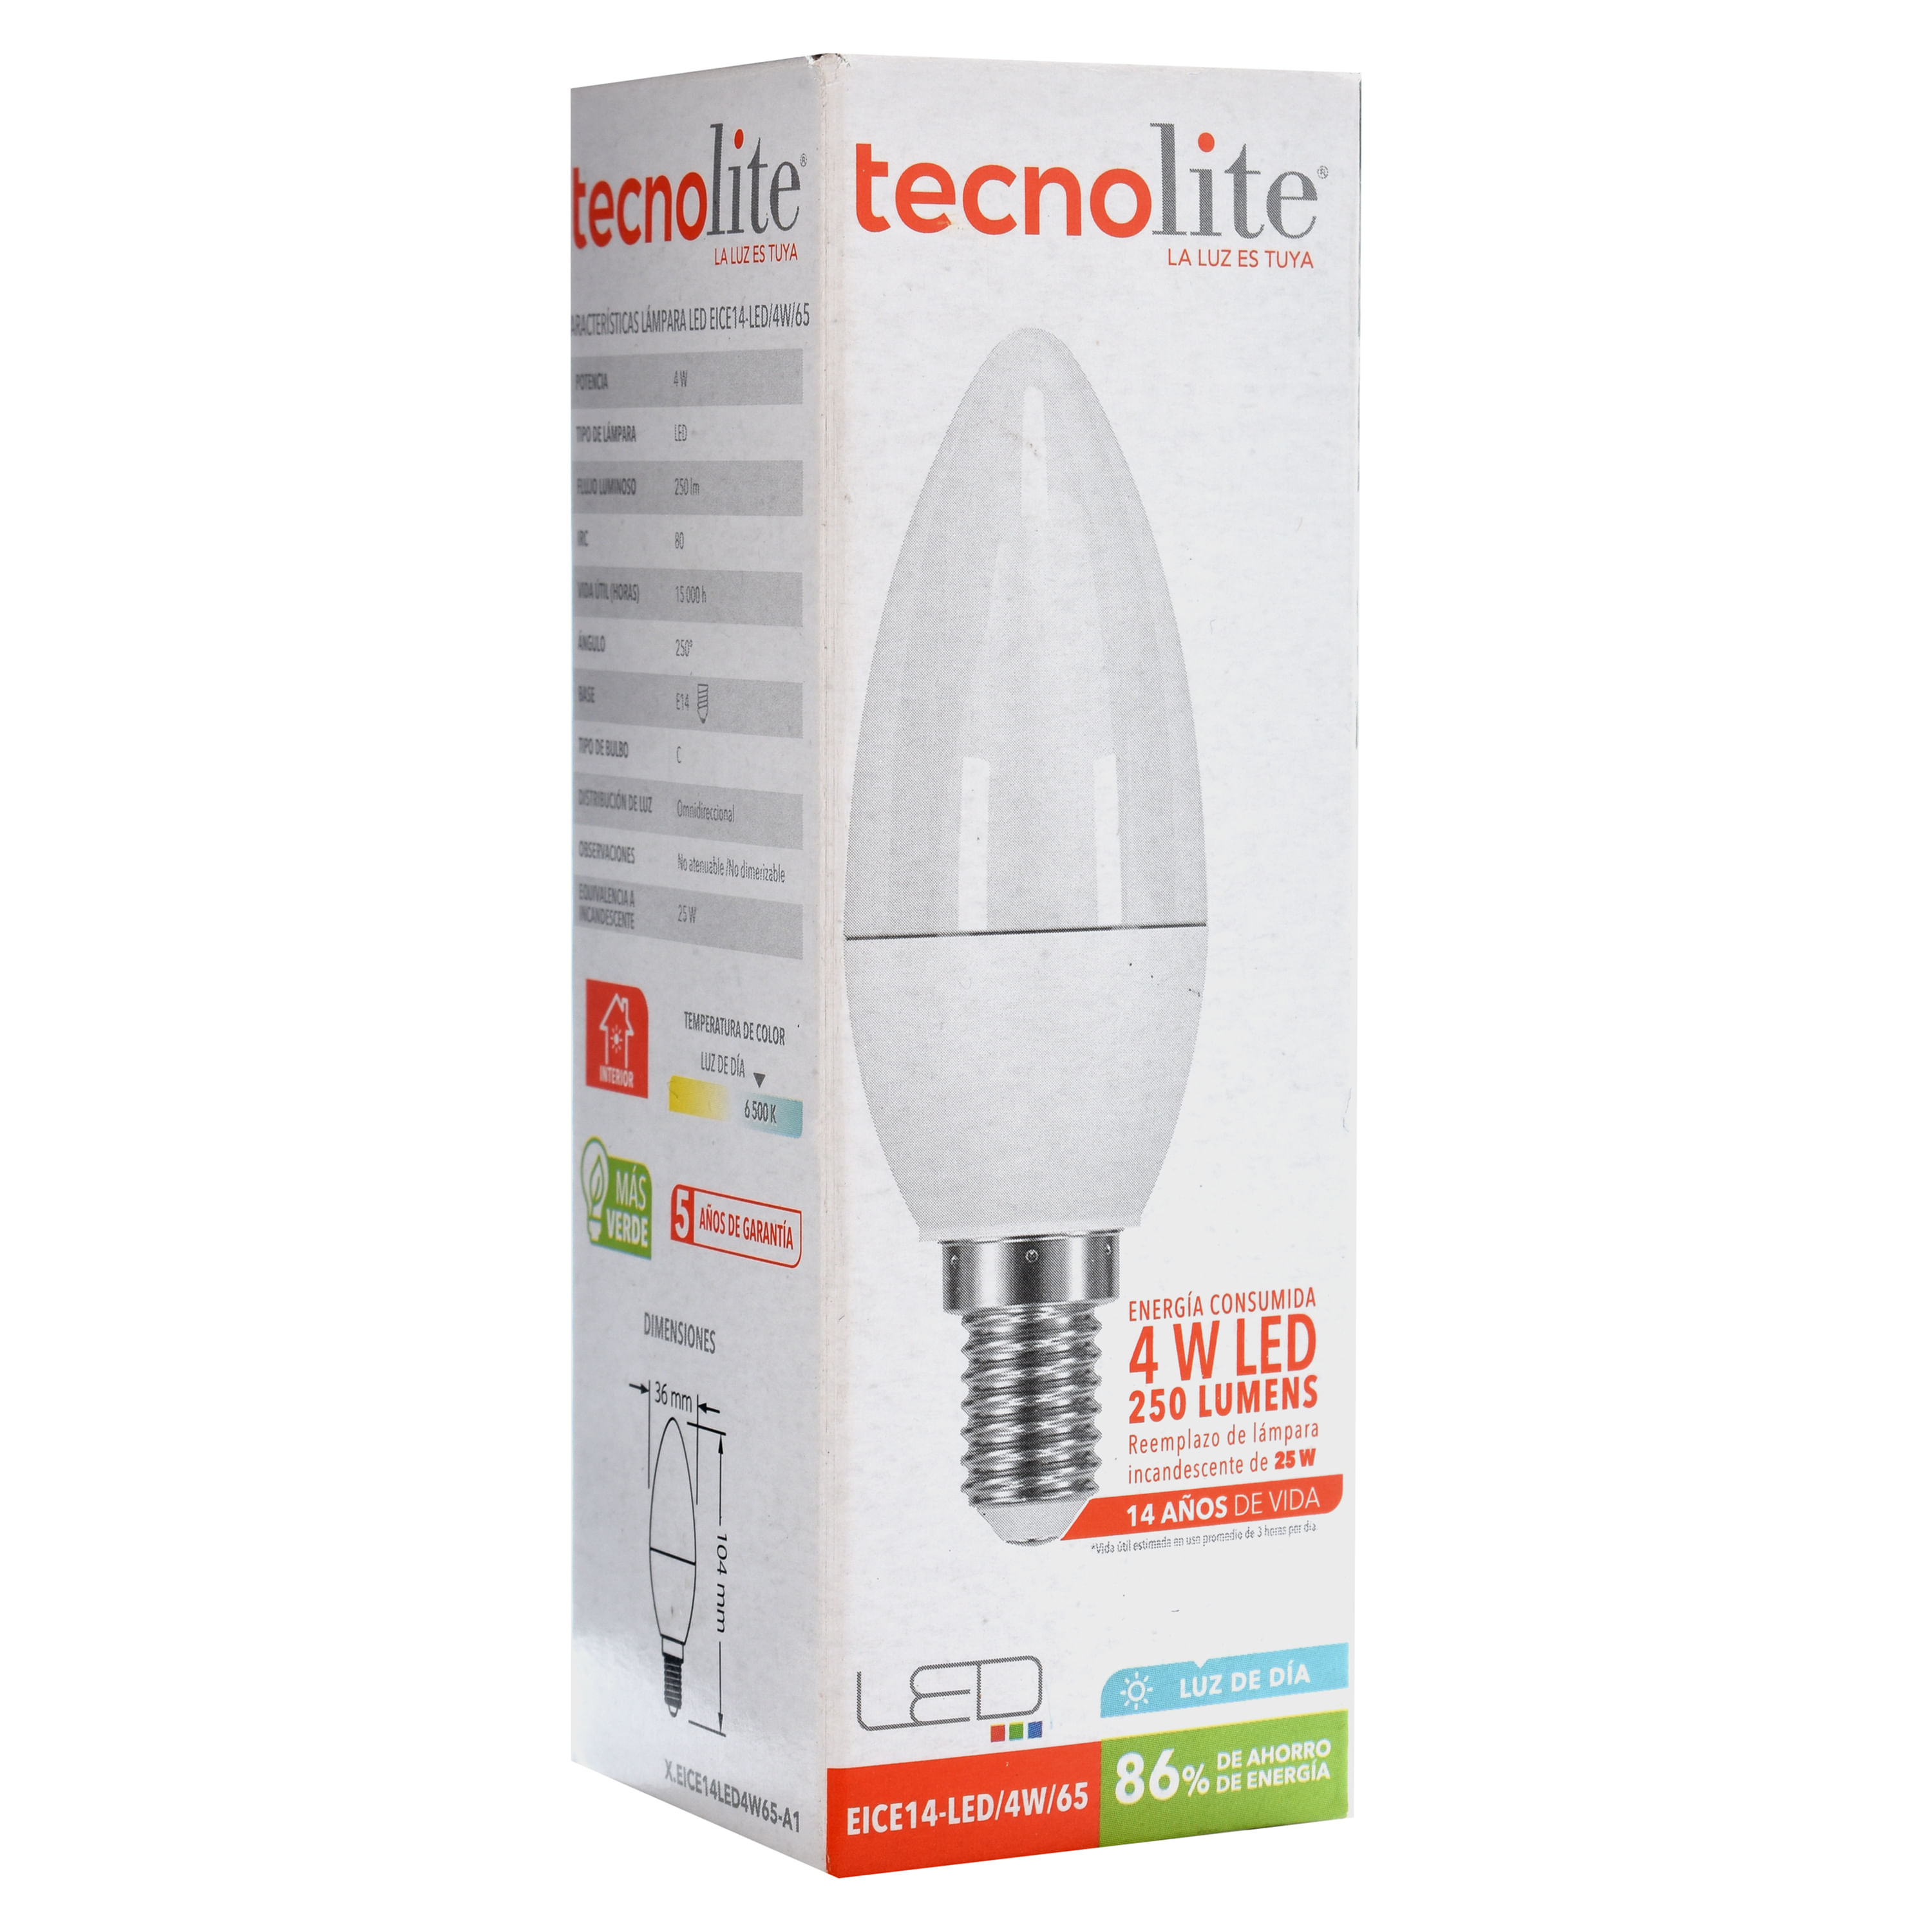 Bombilla LED de base E14 equivalente a 3 W, bombilla incandescente de 40 W,  luz diurna blanca 6500 K, bombillas LED para electrodomésticos de cocina